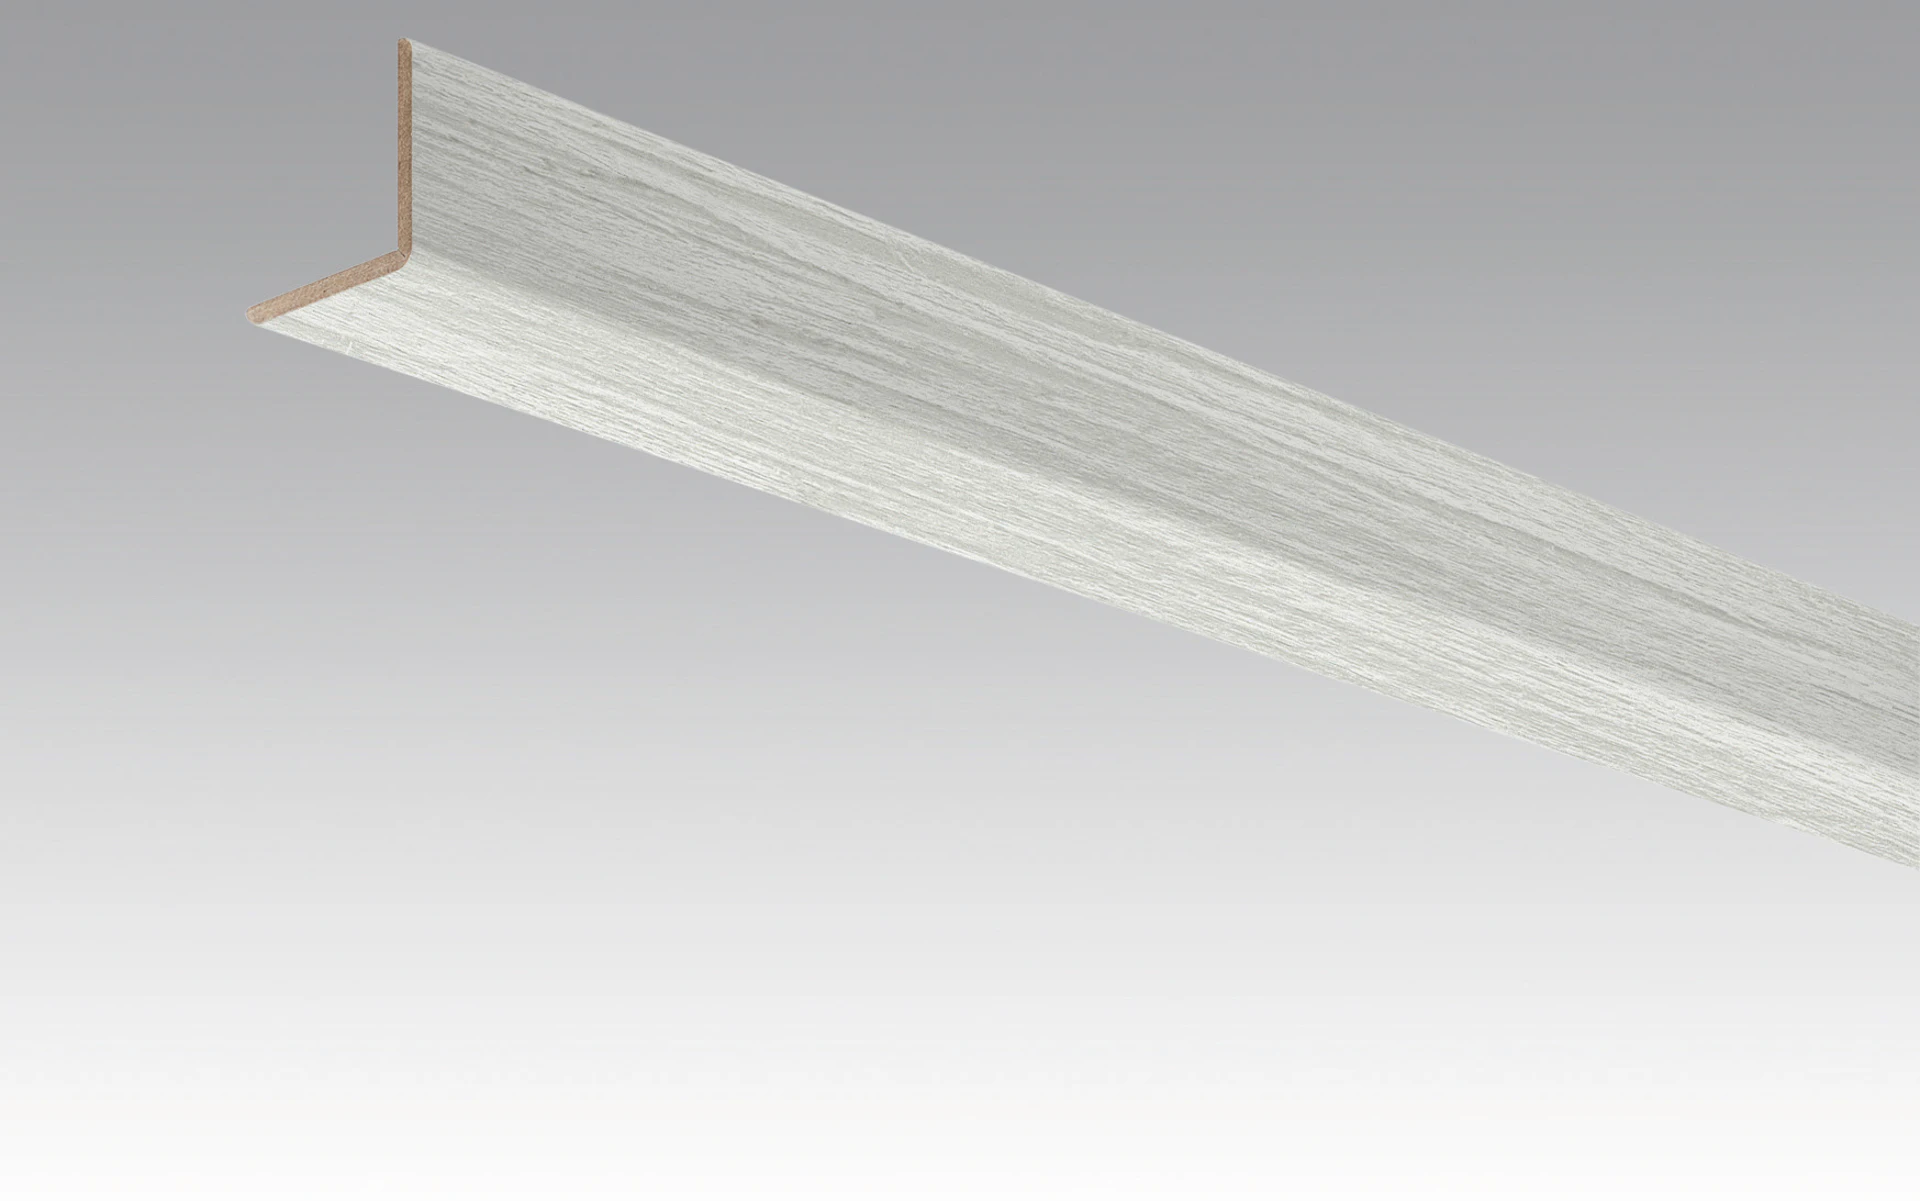 MEISTER Skirting boards Angle skirting Corona 4087 - 2380 x 33 x 3.5 mm (200035-2380-04087)